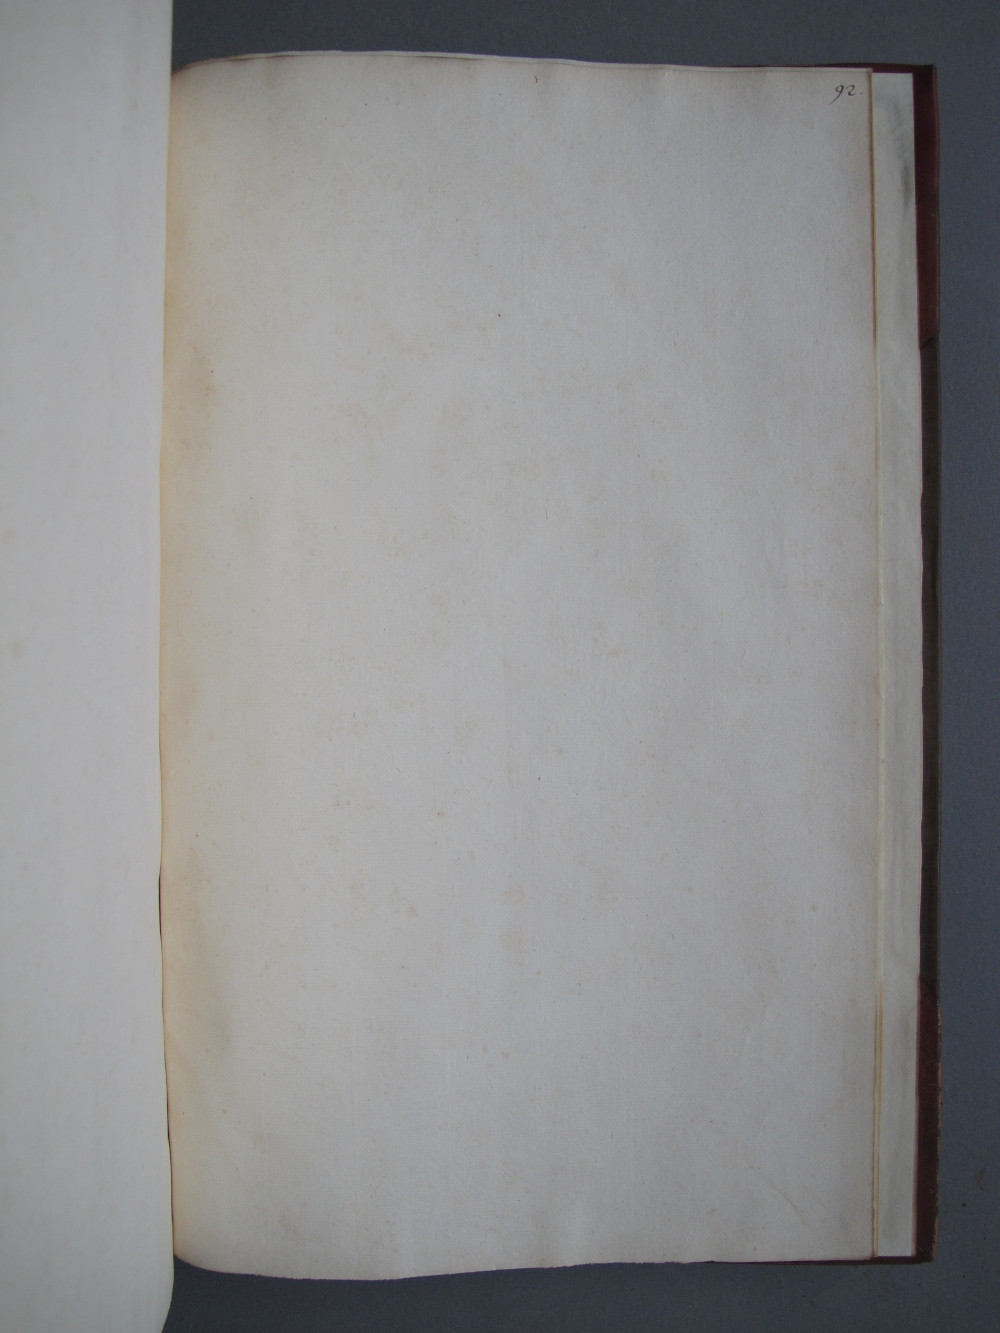 Folio 92 recto